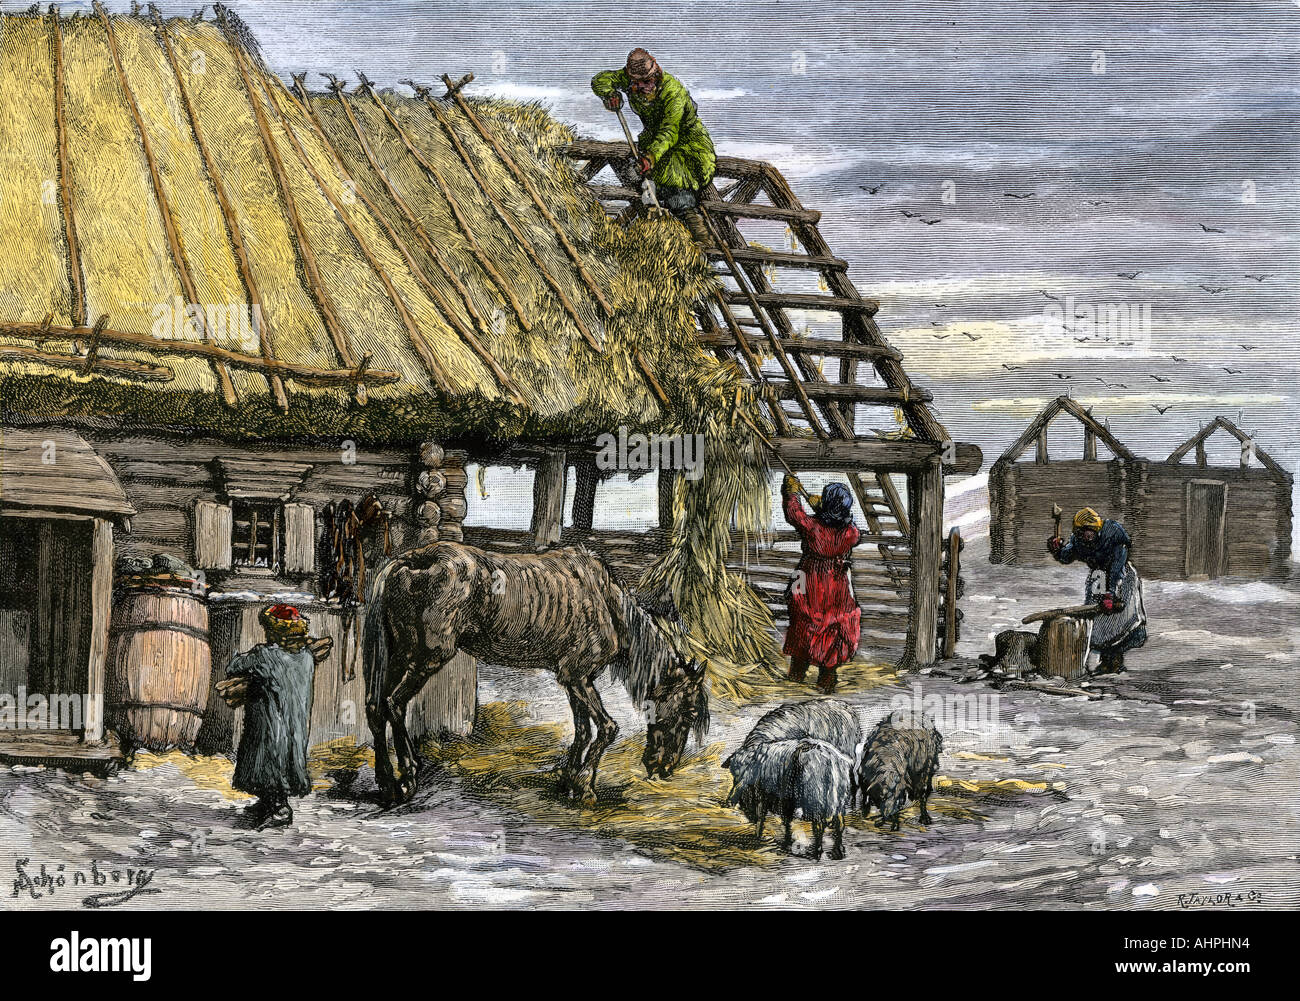 Картина голод. Голод в России 1891-1892 картина. Голод в царской России в 1891-1892. Голод крестьян в 19 веке в России.